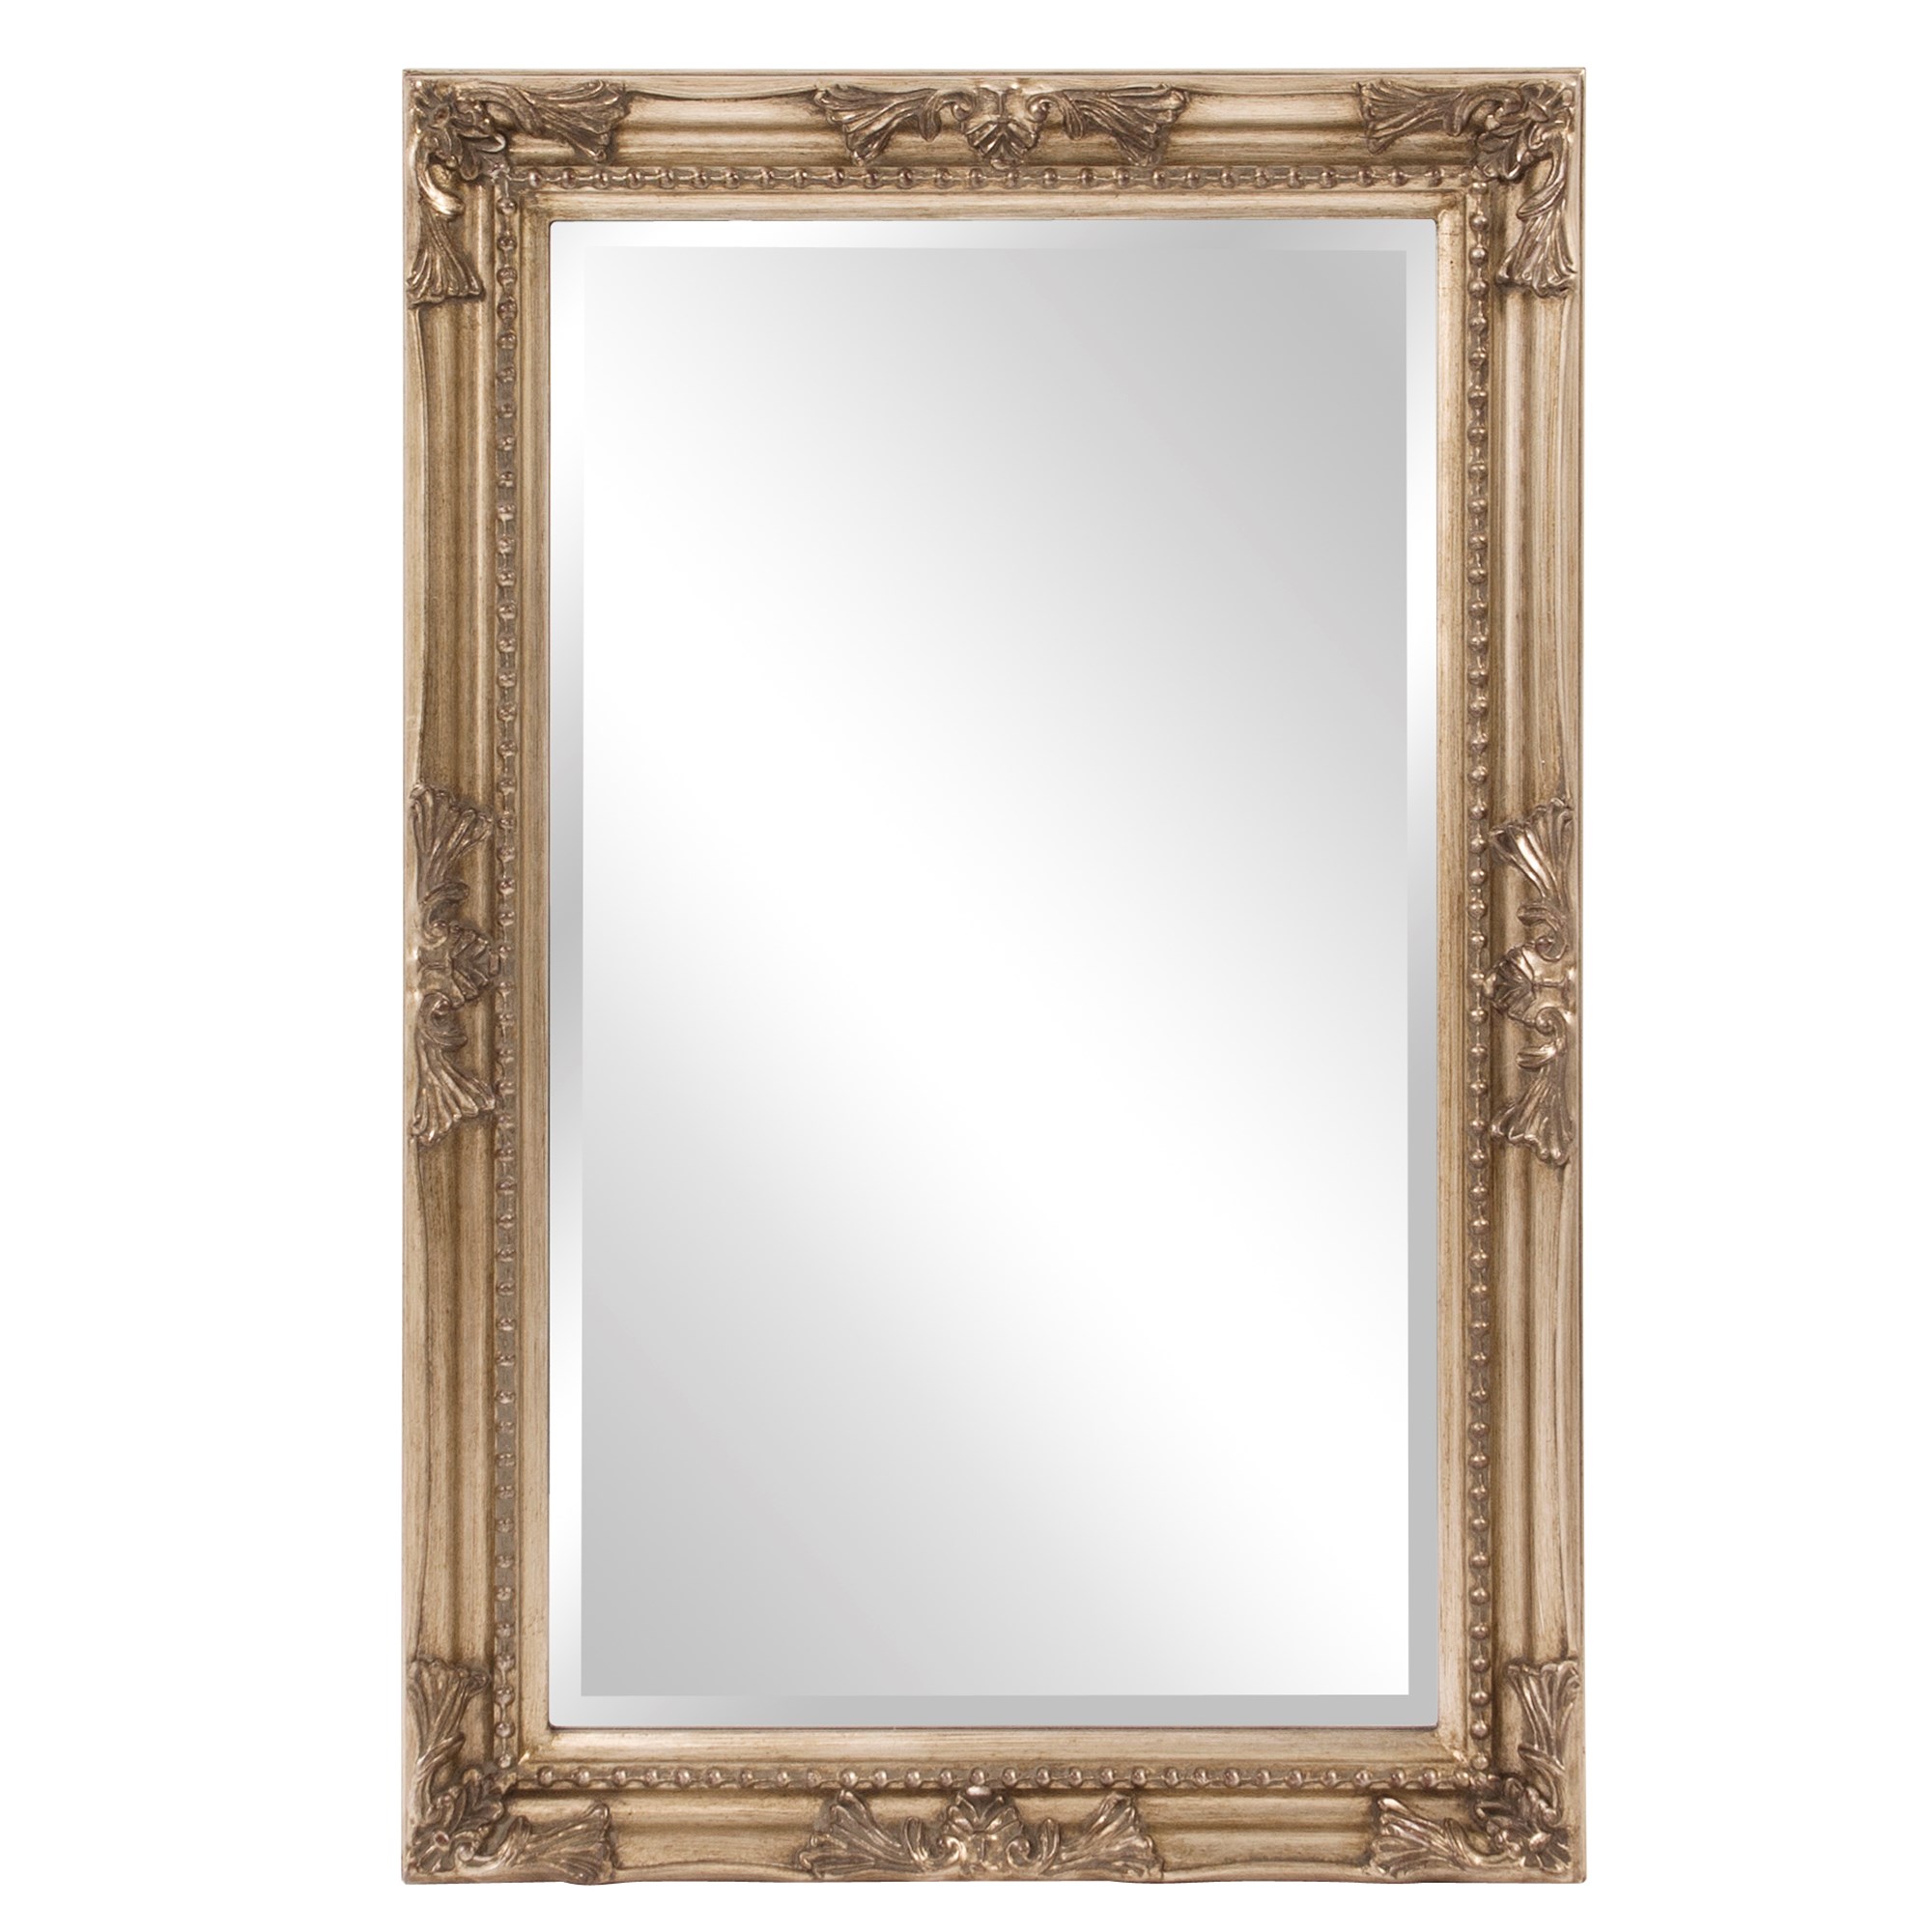 Glossy White Howard Elliott Queen Ann Rectangular White Mirror 53081